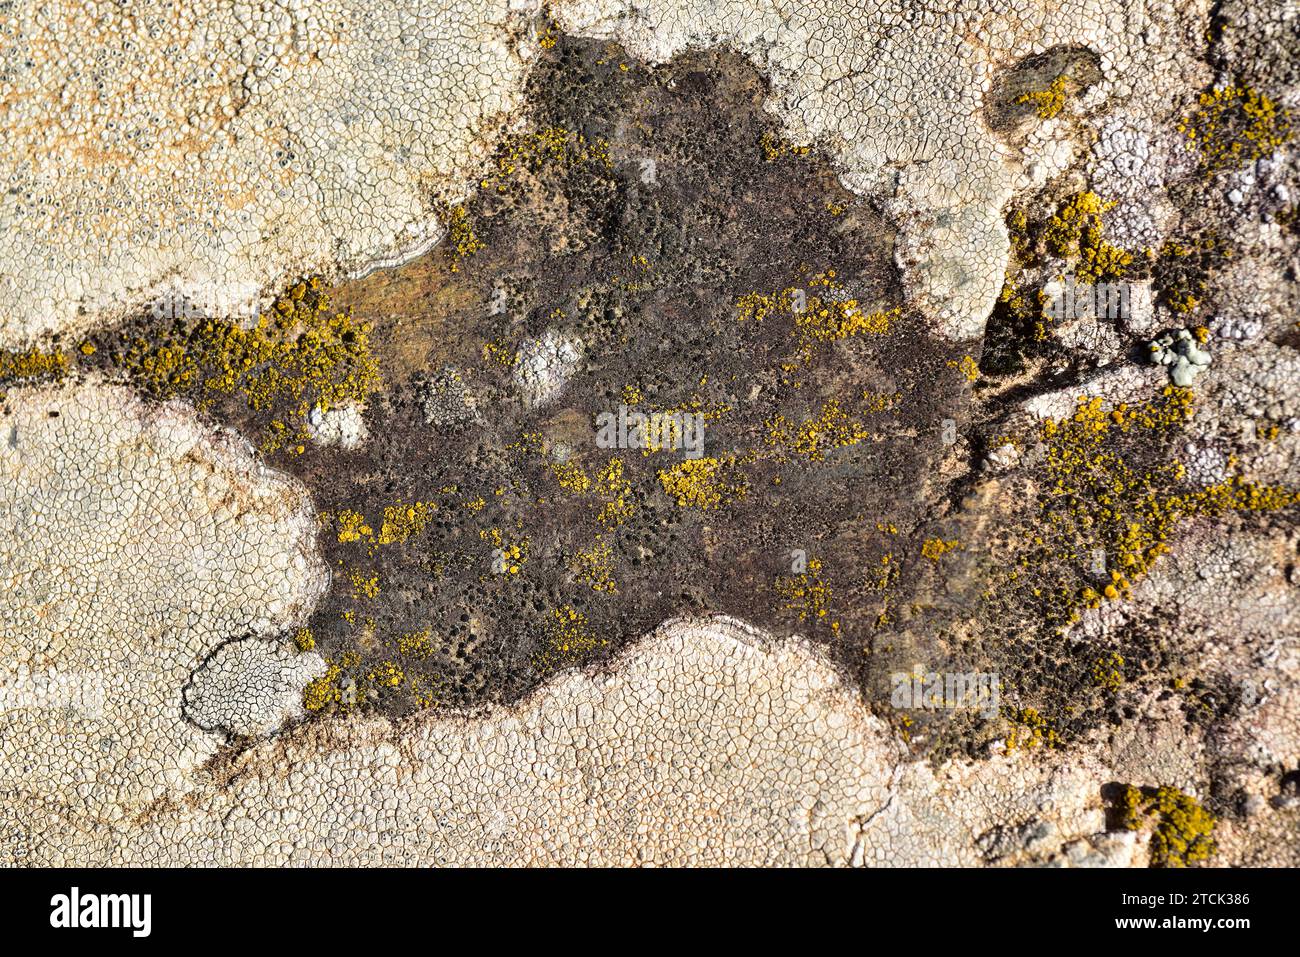 Buellia punctata (centrum, black), Candelariella vitellina (Yellow) and Aspicilia intermutans (around, grey) are three crustoses lichens. This photo w Stock Photo